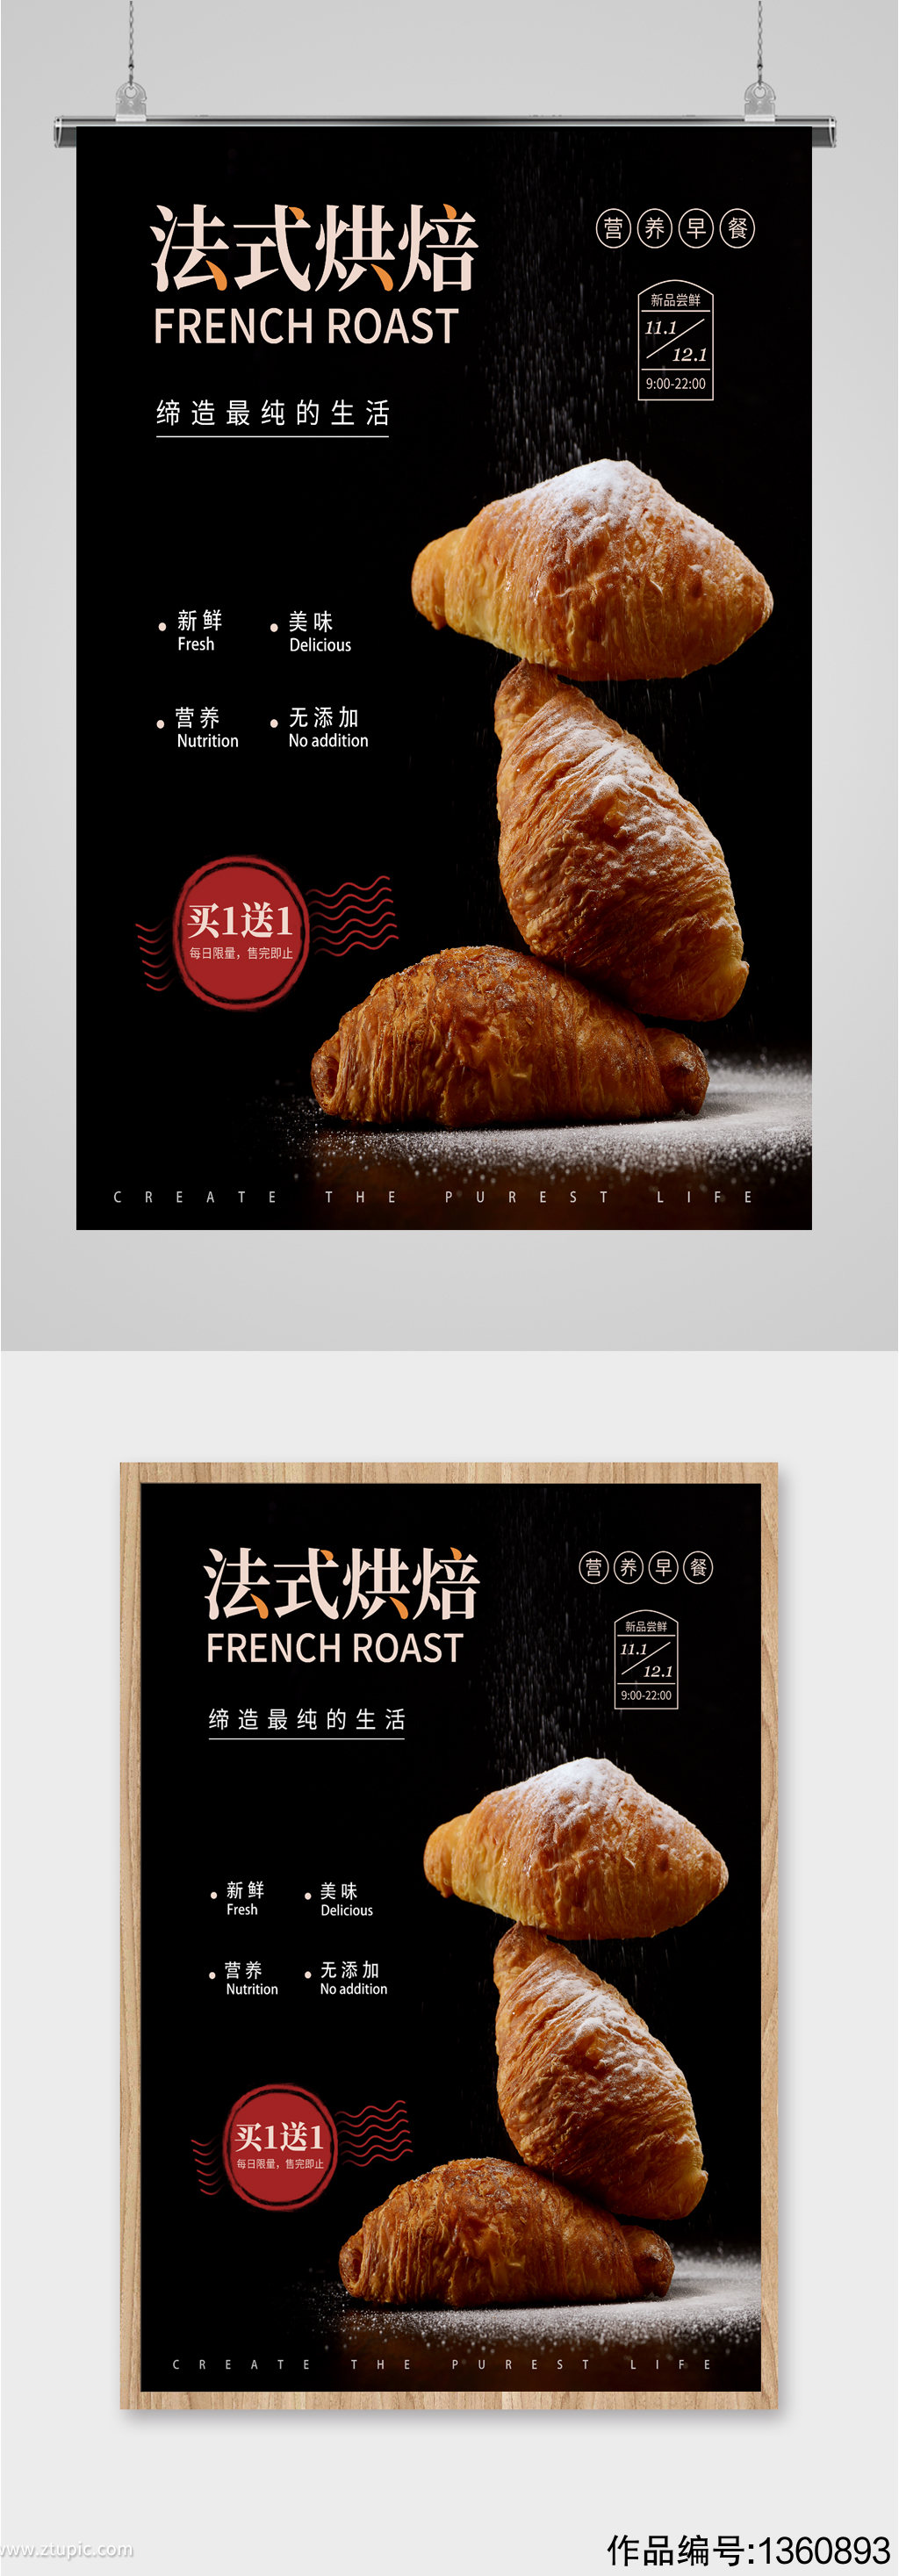 法式烘焙面包宣传海报